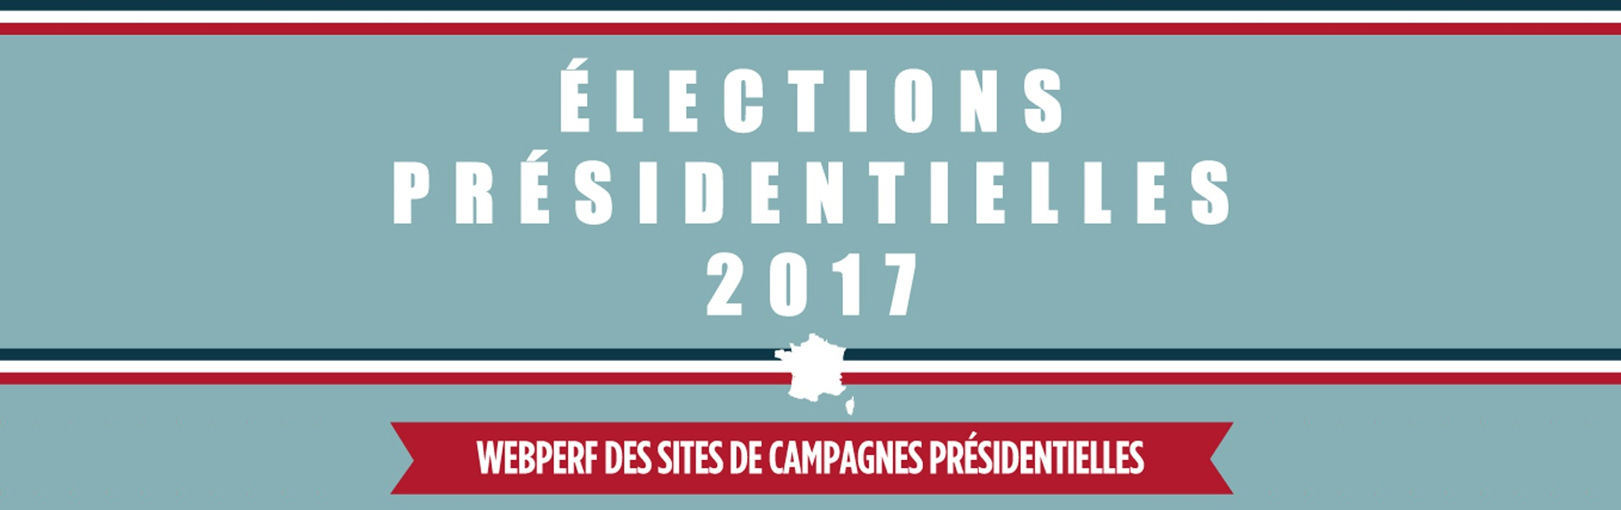 présidentielle 2017 : webperf des sites de campagne par Netvigie